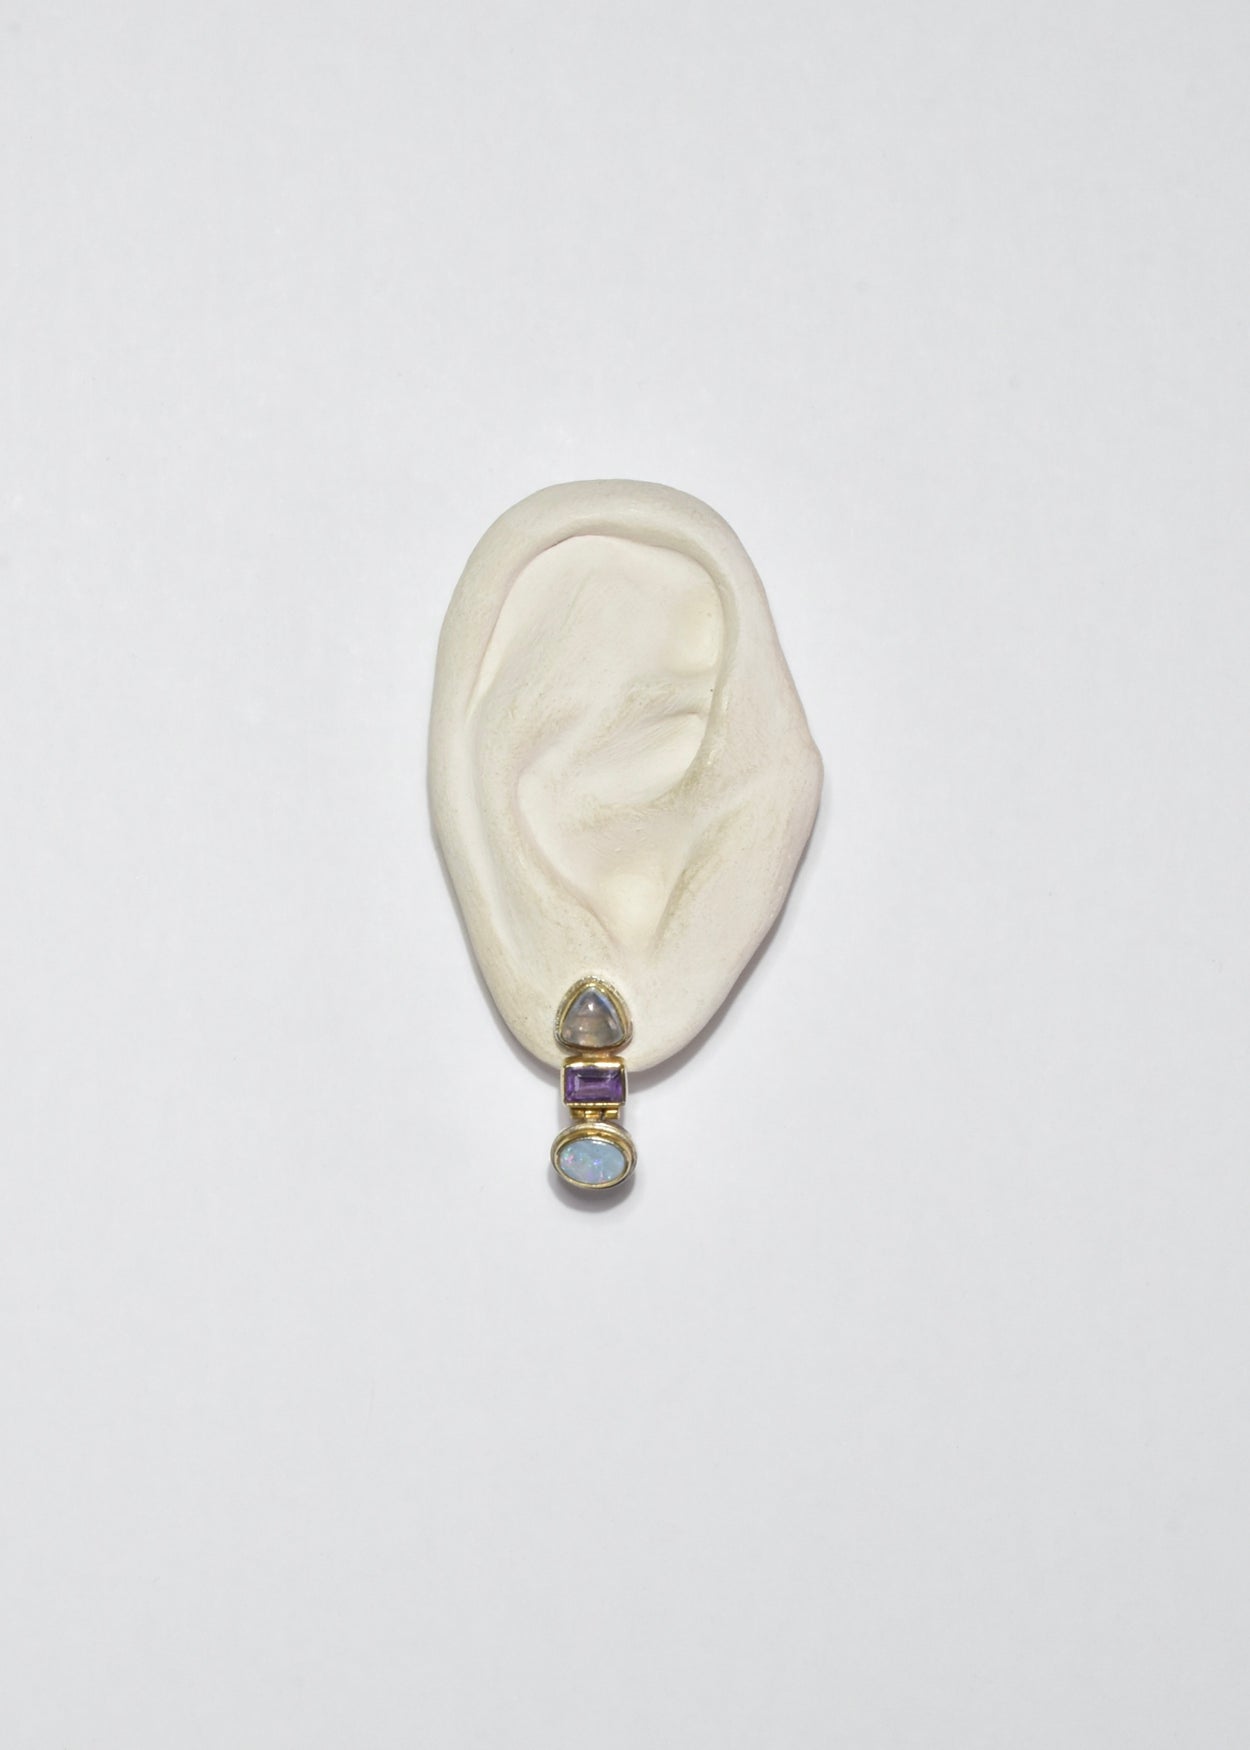 Moonstone Opal Amethyst Earrings